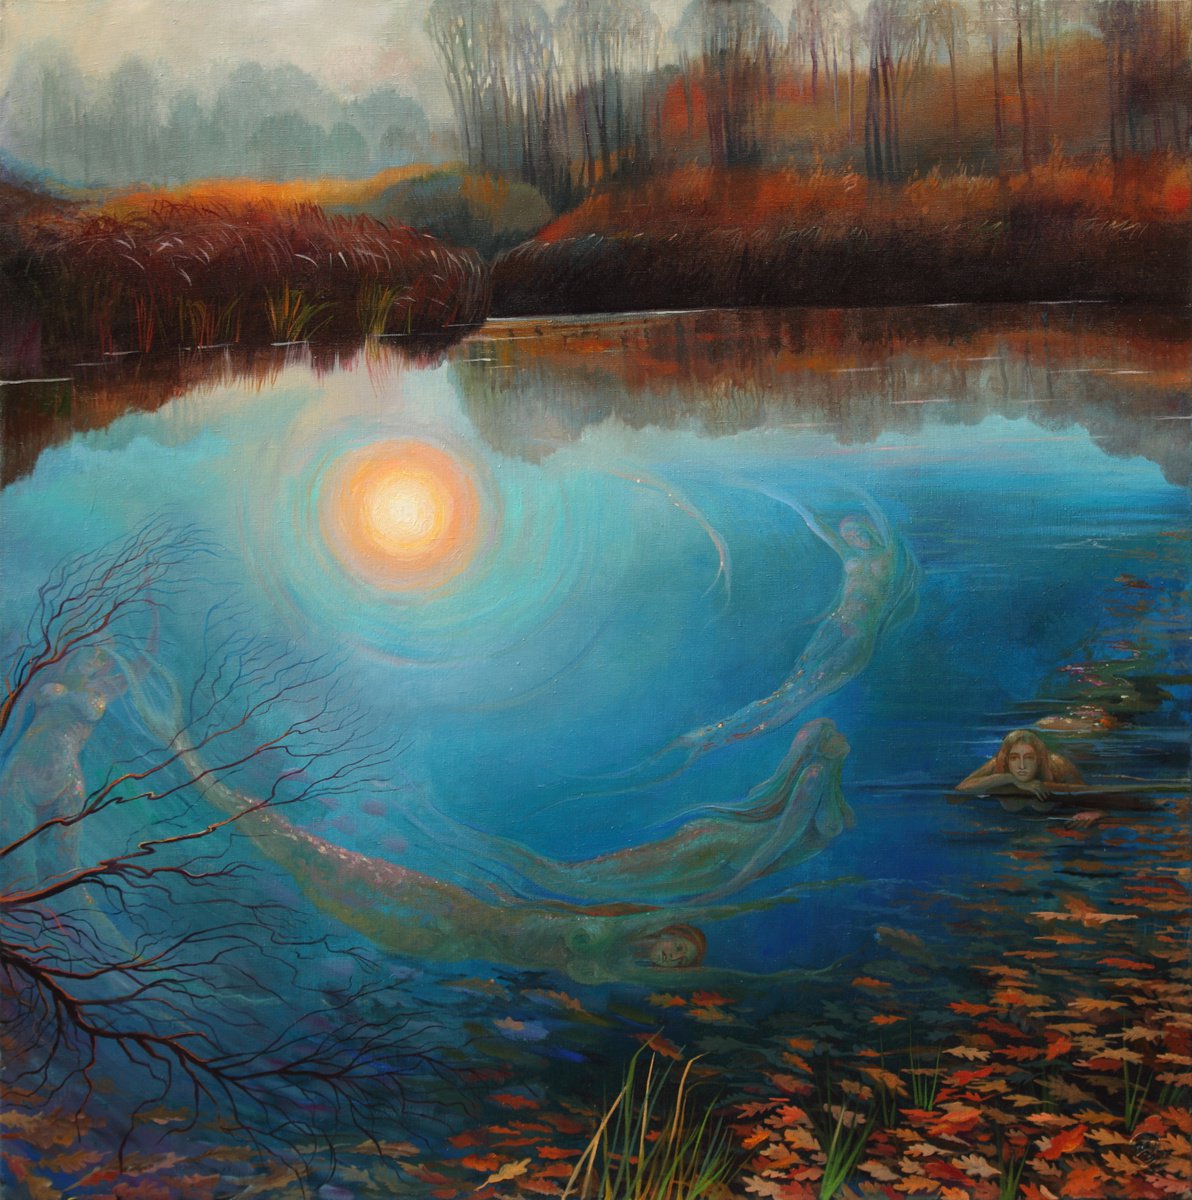 Mermaid pond by Sergey Lesnikov